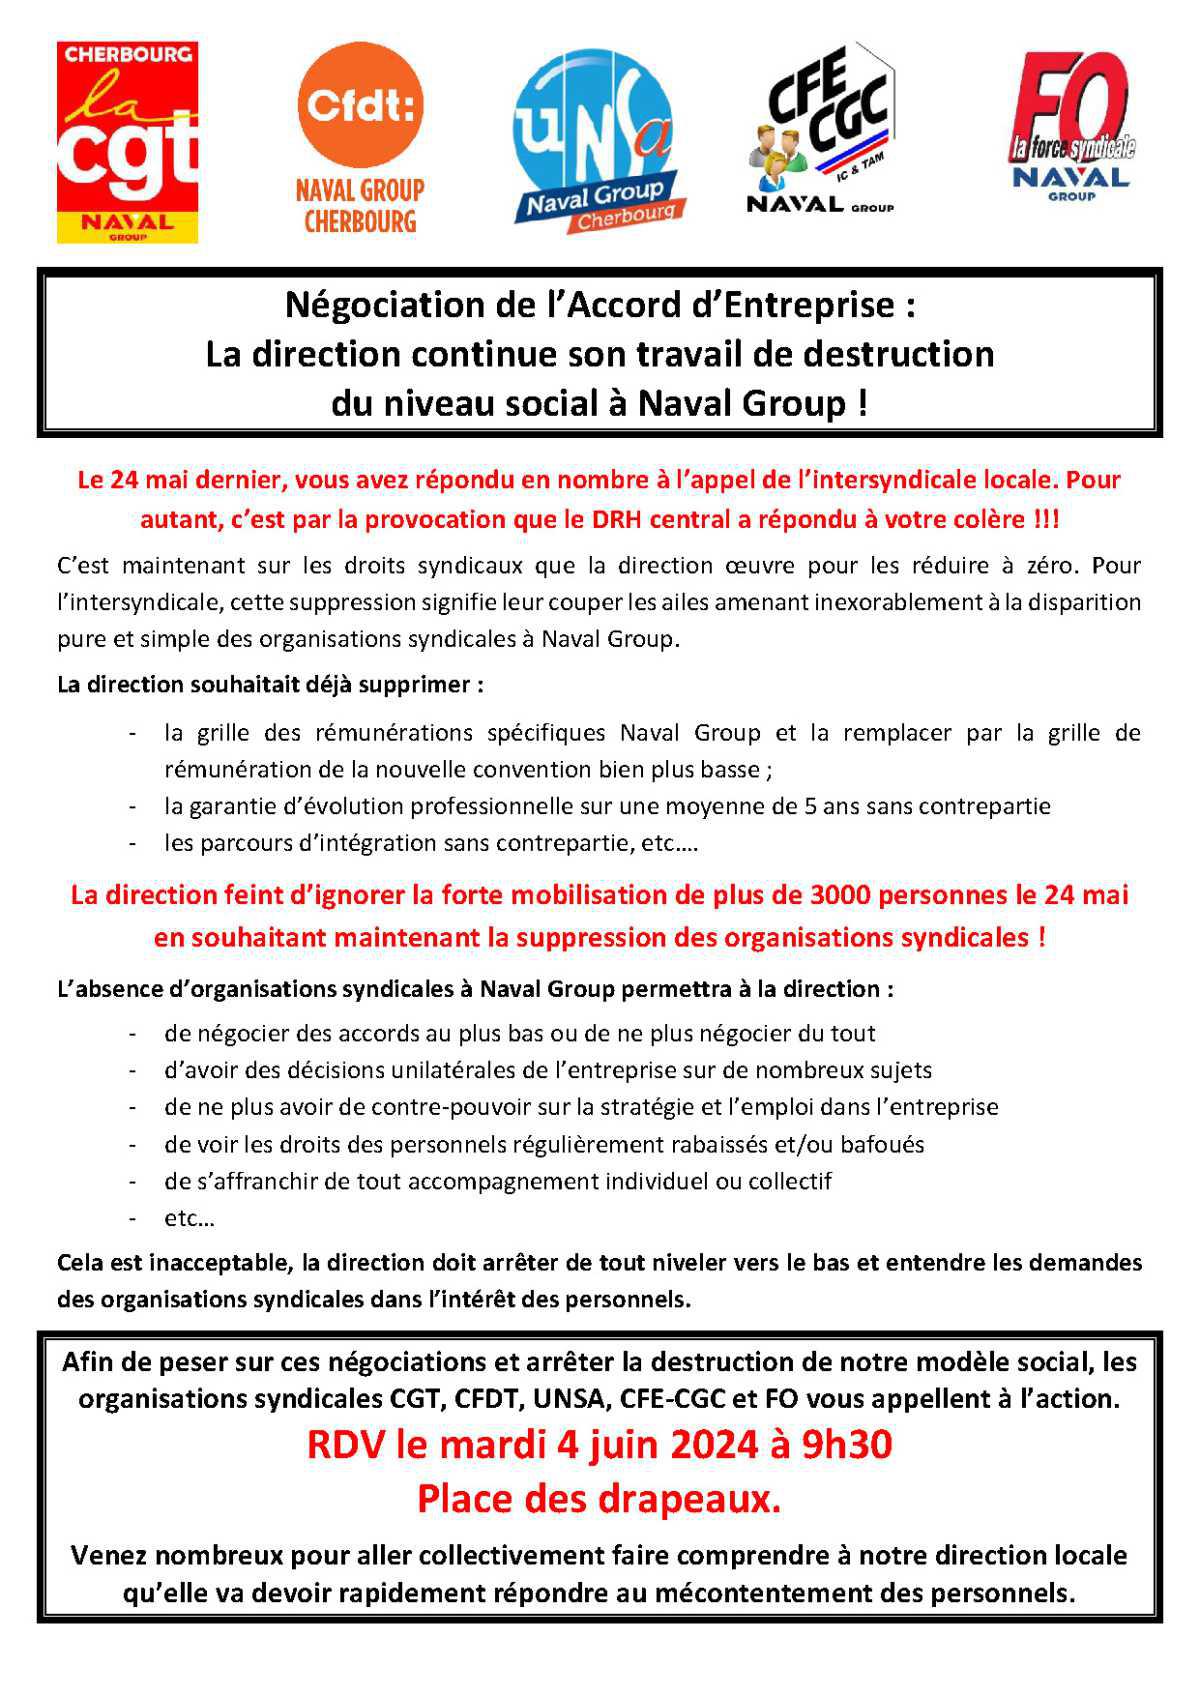 Négociation de l'AE : Cherbourg, Appel Intersyndical - Mardi 4 juin, tous concernés, tous mobilisés !